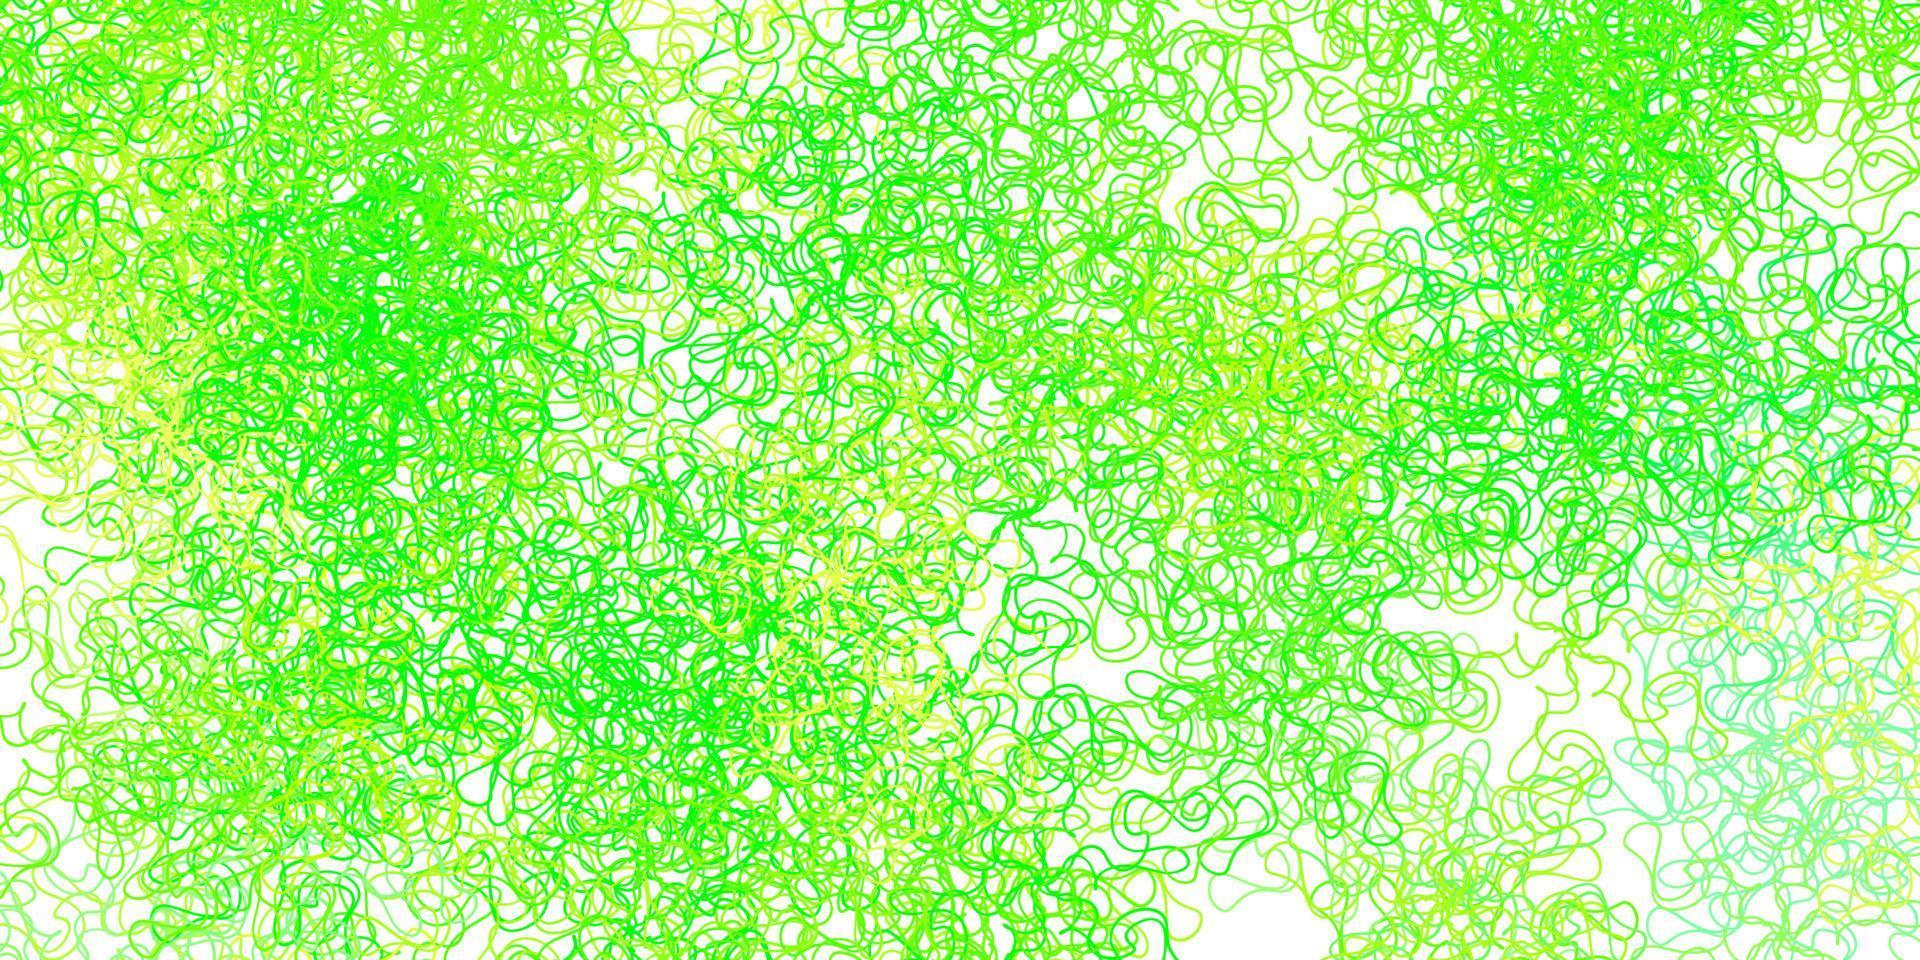 ljusgrön, gul vektorbakgrund med bågar. vektor